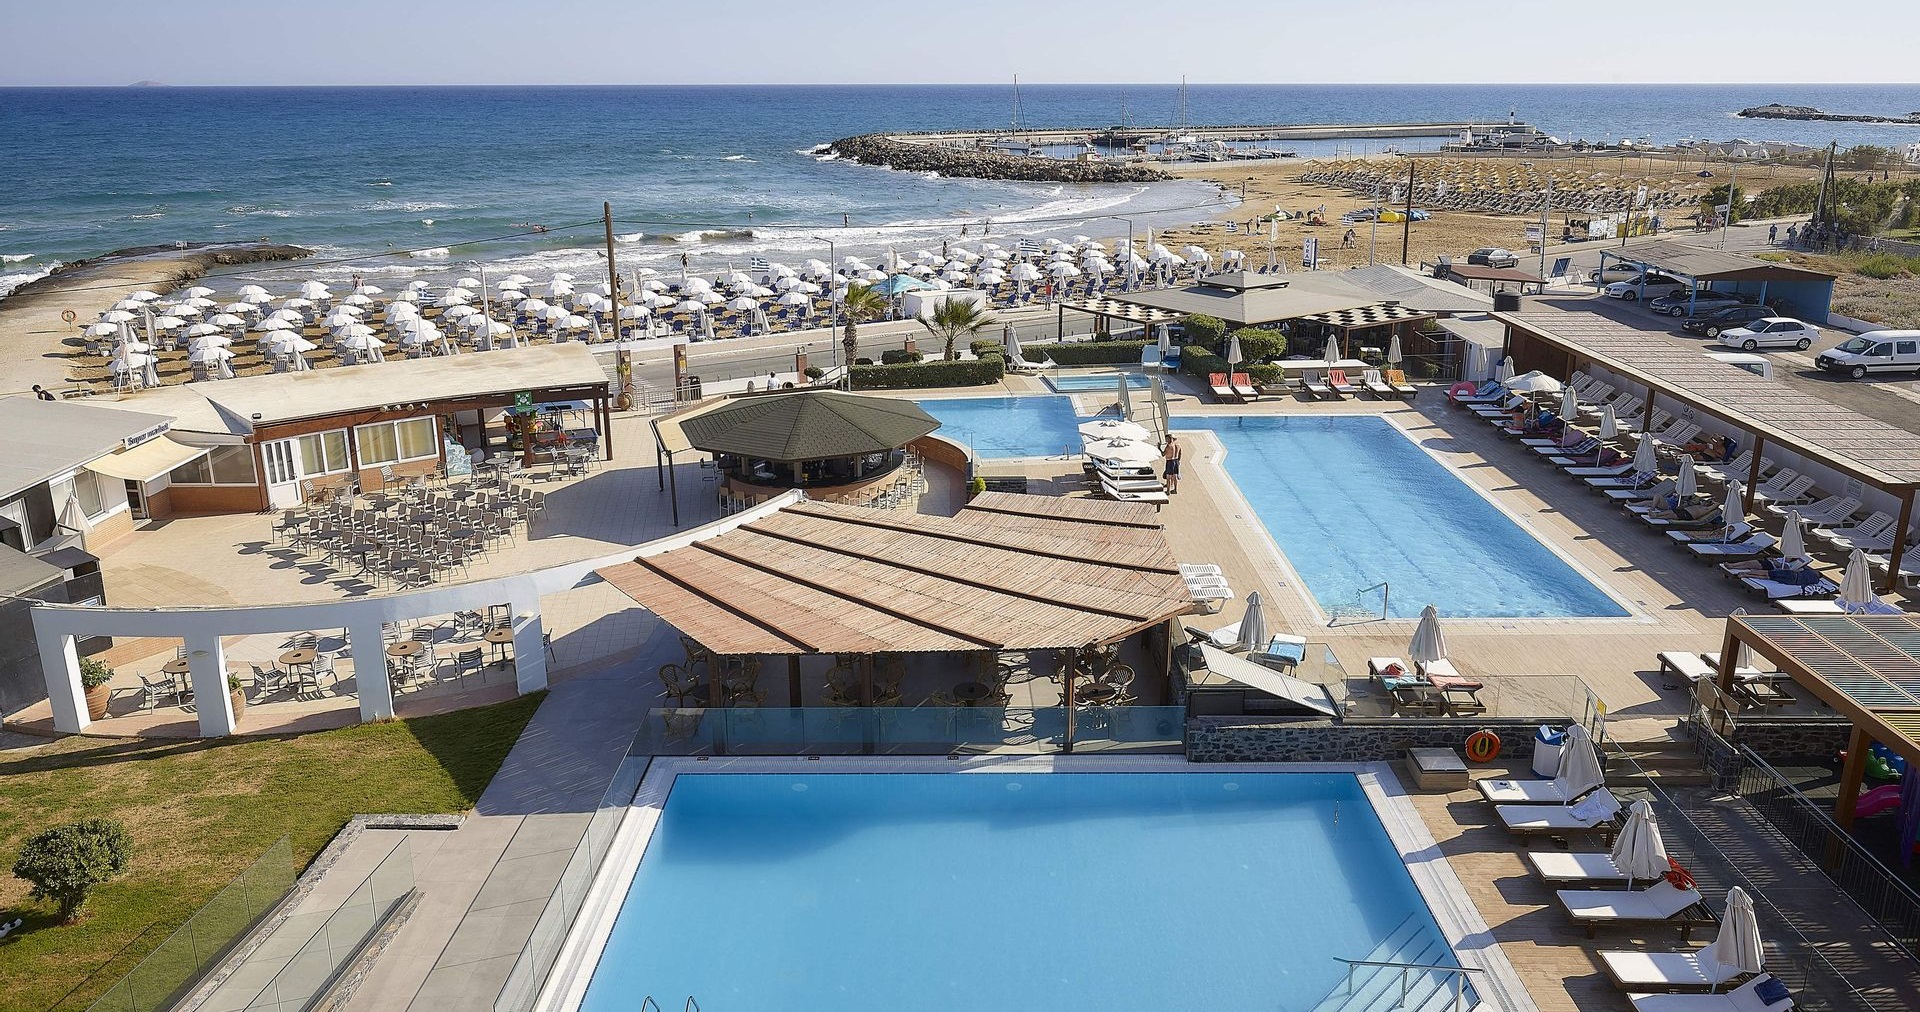 4* Astir Beach Hotel - Ηράκλειο, Κρήτη ✦ 2 Ημέρες (1 Διανυκτέρευση) ✦ 2 άτομα ✦ 8 ✦ έως 30/09/2022 ✦ Μπροστά στην παραλία!